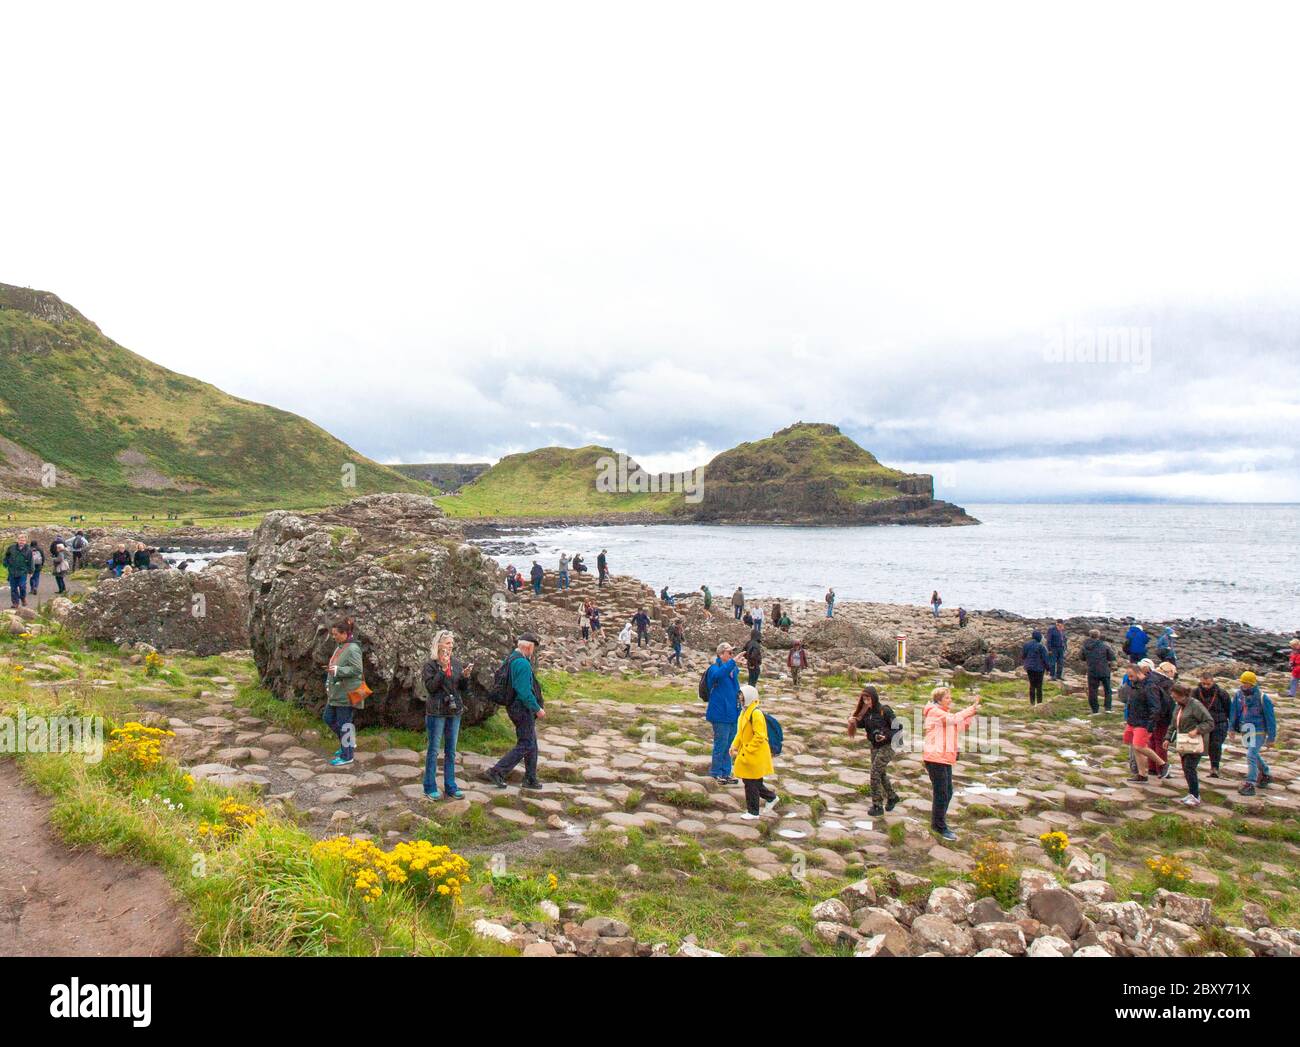 Gente explorando las miles de antiguas columnas de basalto entrelazadas del Calzada del Gigante en la costa norte del Condado de Antrim, Irlanda del Norte. Foto de stock